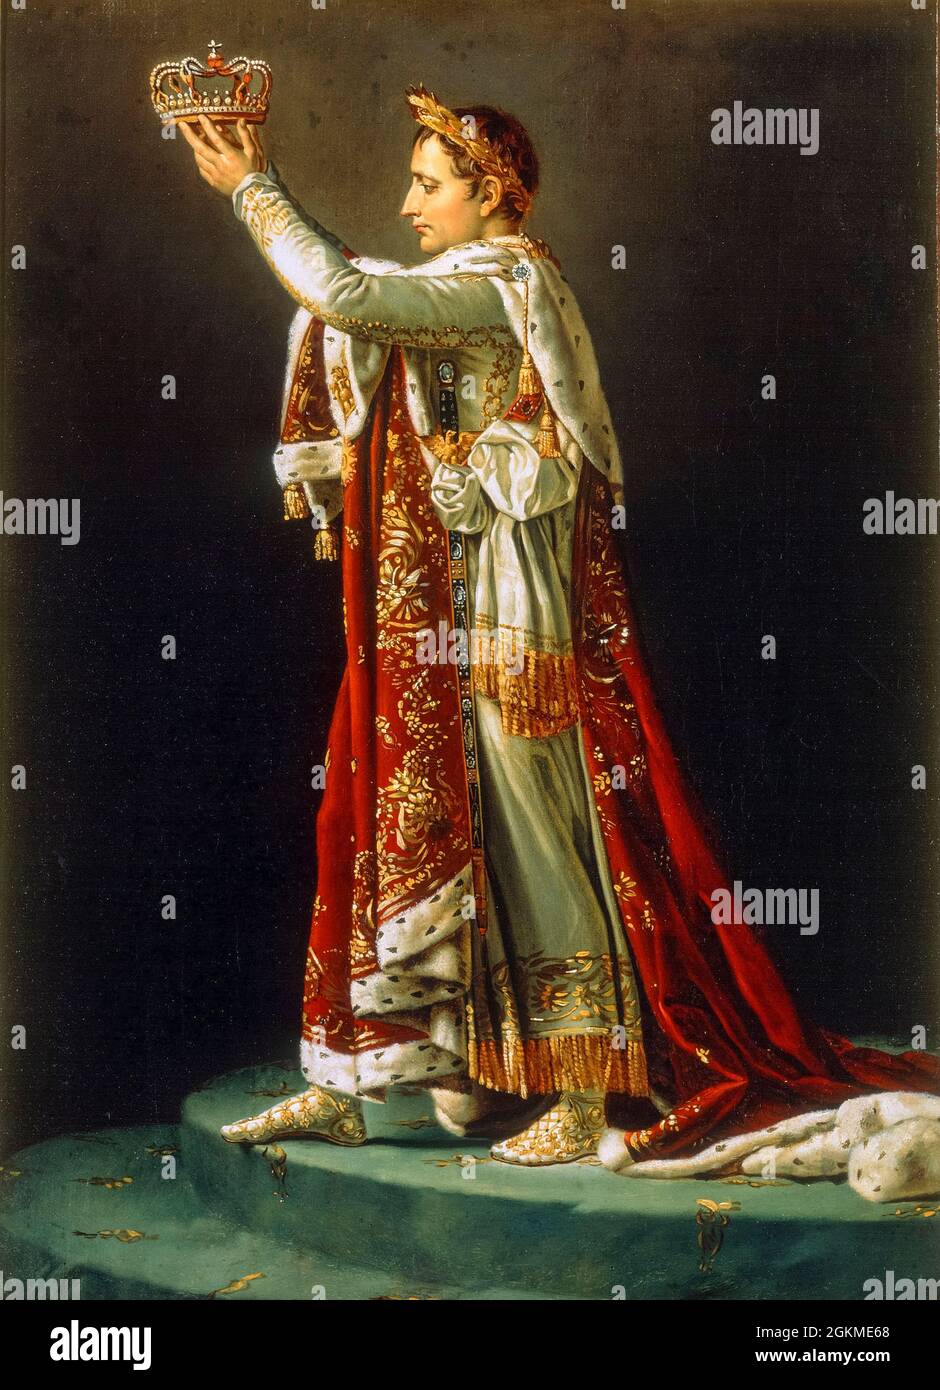 L'imperatore Napoleone Bonaparte sta per coronare l'imperatrice Josephine, dettaglio da, 'l'incoronazione dell'Imperatore e dell'Imperatrice', dipinto dal laboratorio di Jacques Louis David, circa 1808 Foto Stock